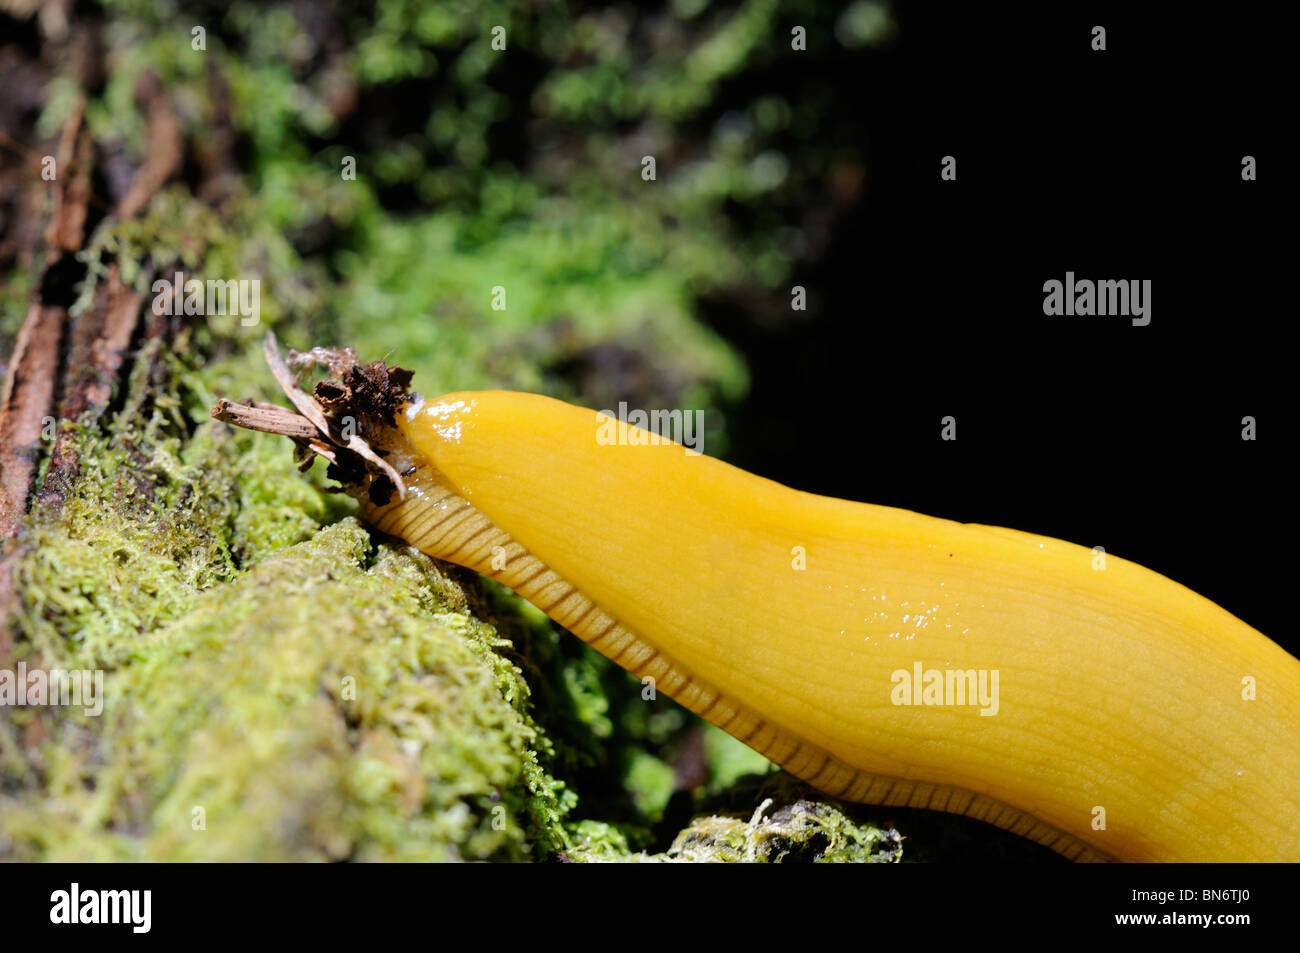 Stock Photo closeup mostrando la caudal tapón de mucosidad de banana babosa arrastrándose por el suelo del bosque. Foto de stock